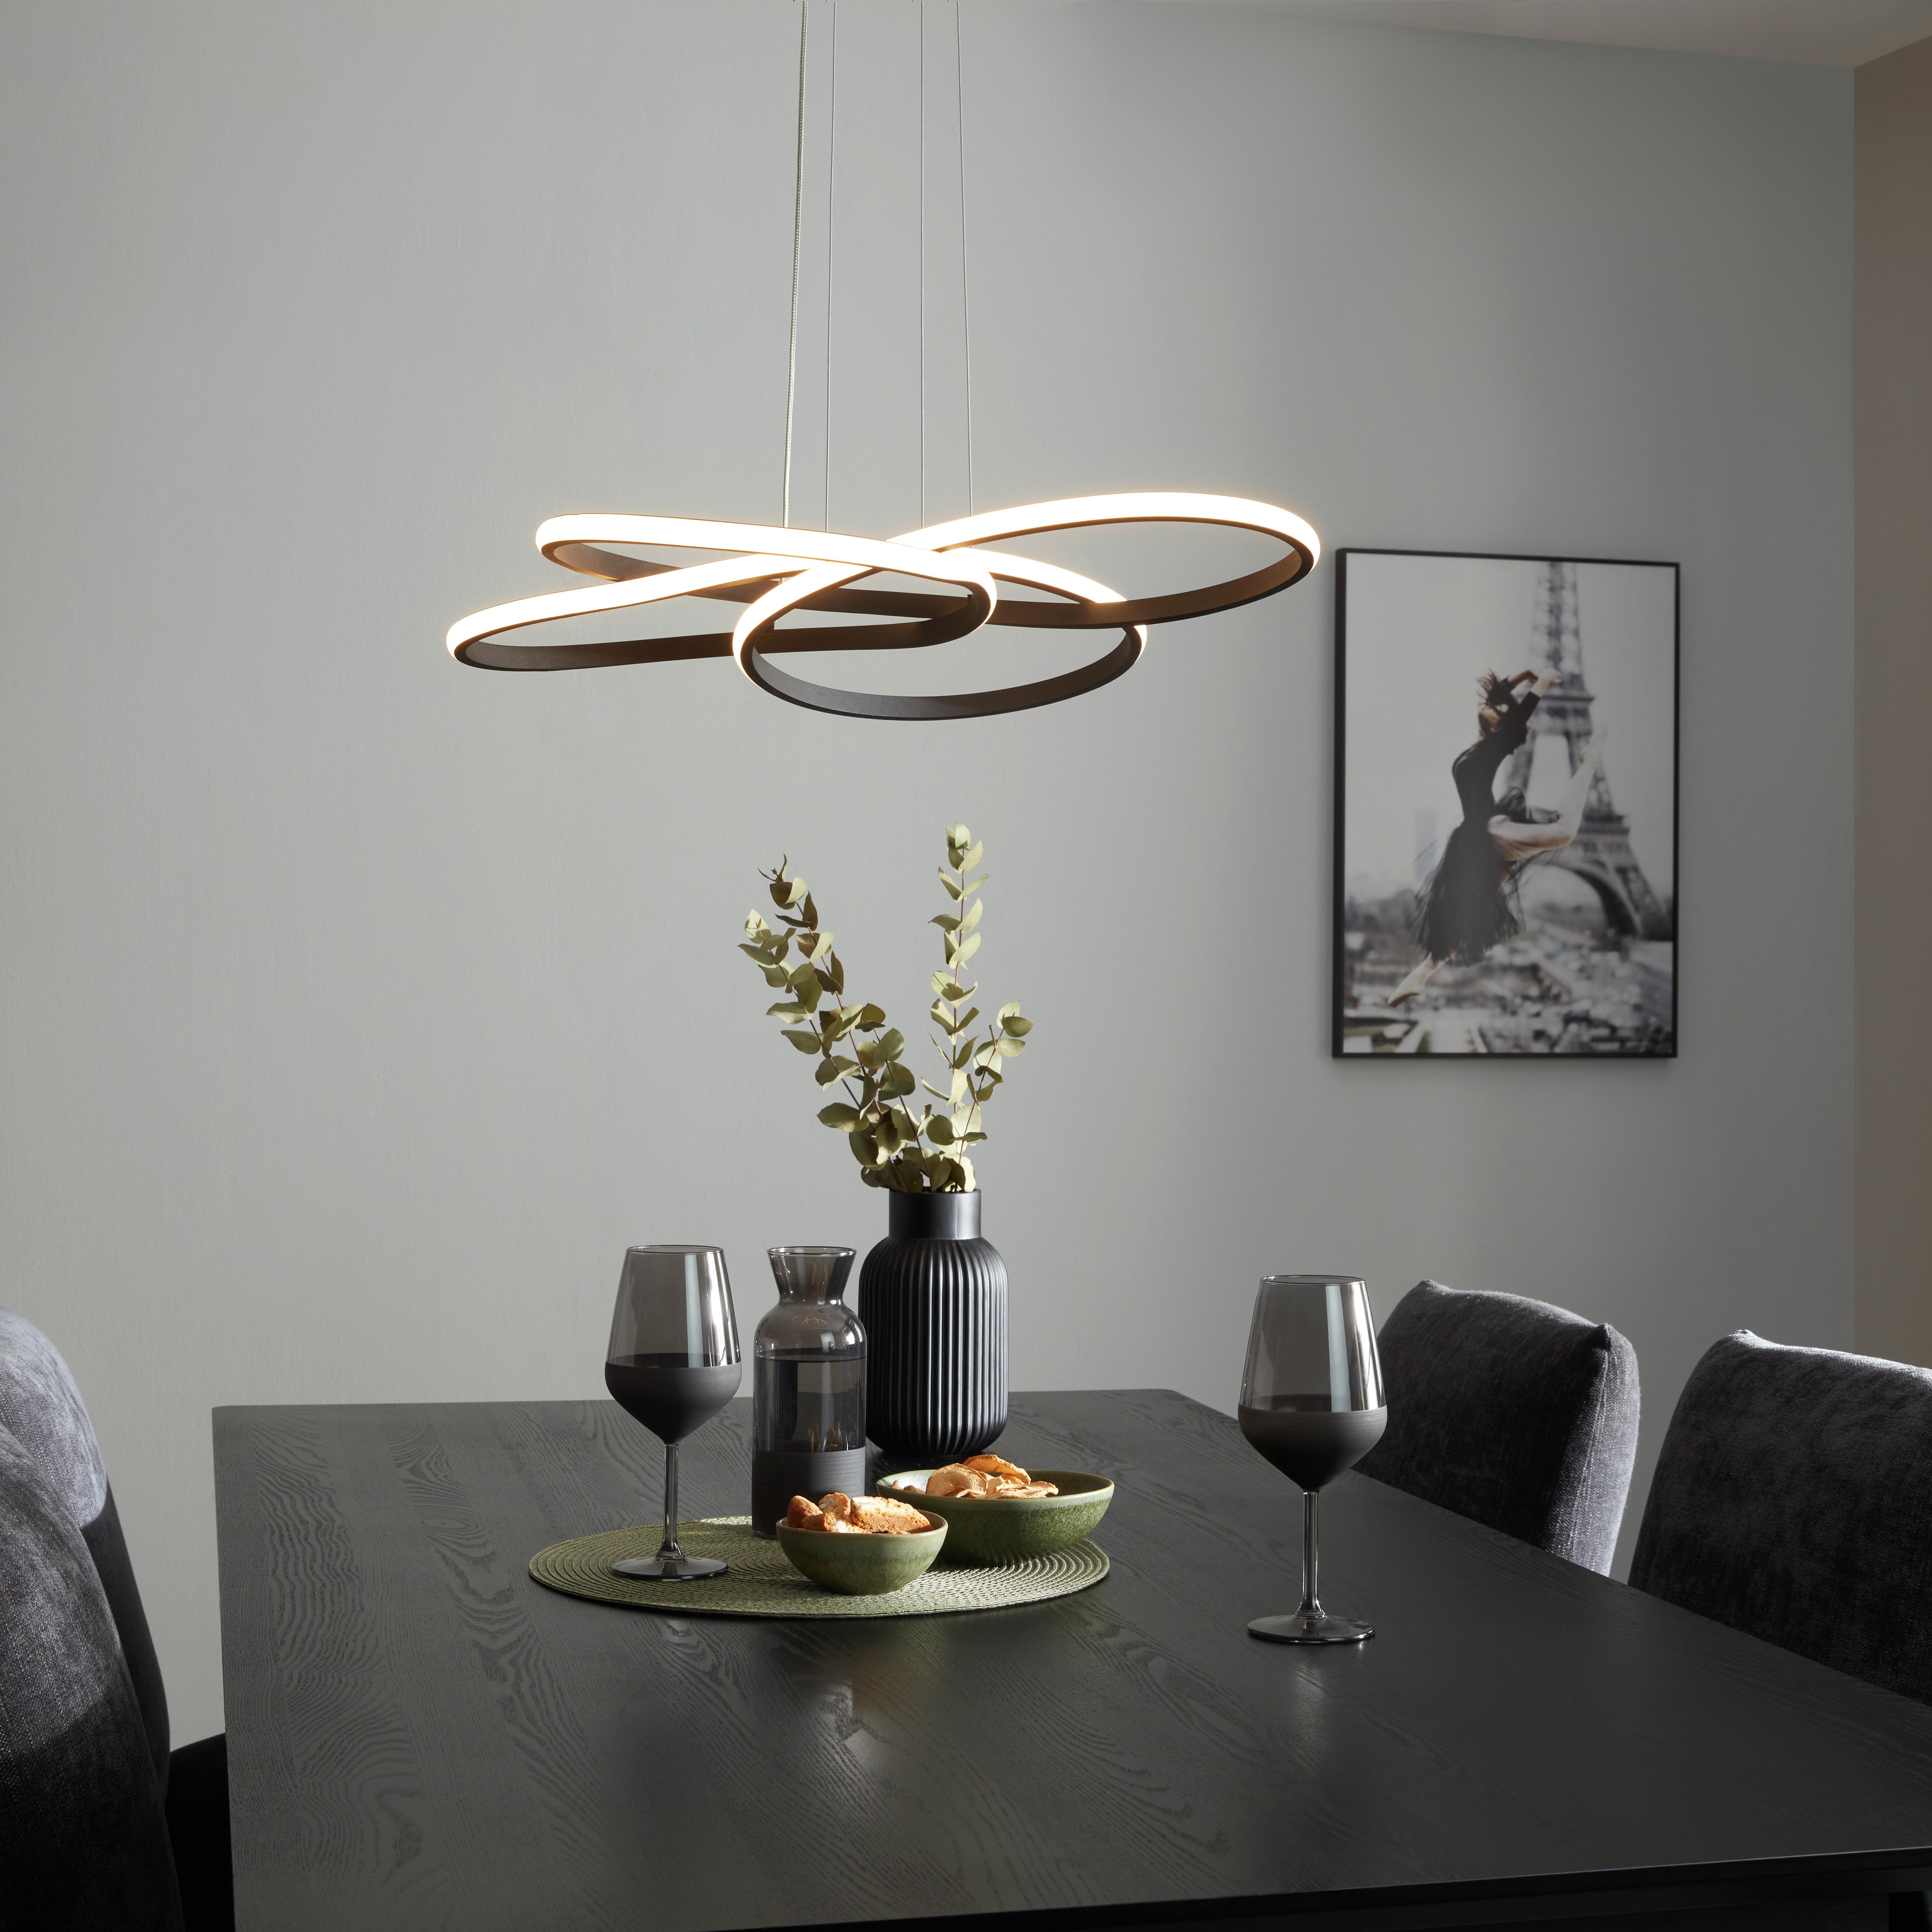 LED-Hängeleuchte Oliveio in Schwarz max. 36 Watt - Schwarz, MODERN, Kunststoff/Metall (60/120cm) - Premium Living